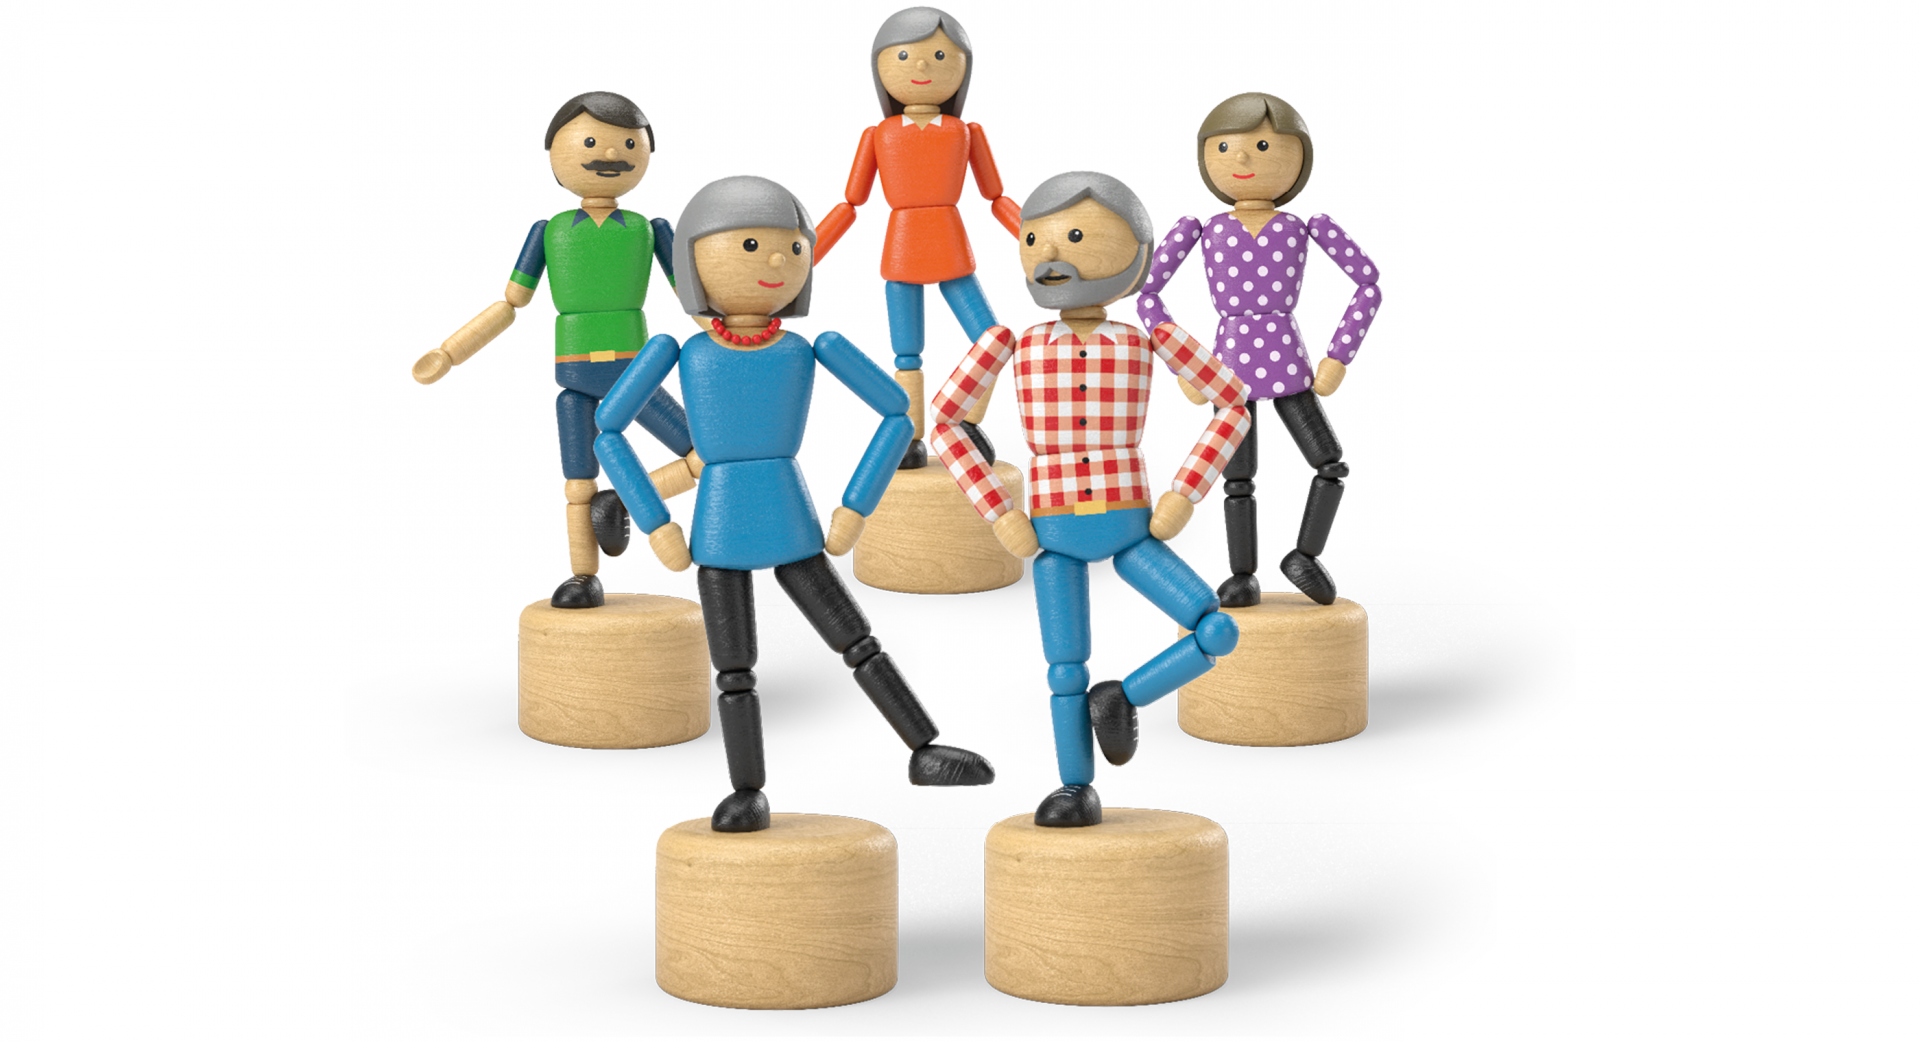 Cinq figurines en bois positionnées sur une jambe pour représenter un exercice d'équilibre.